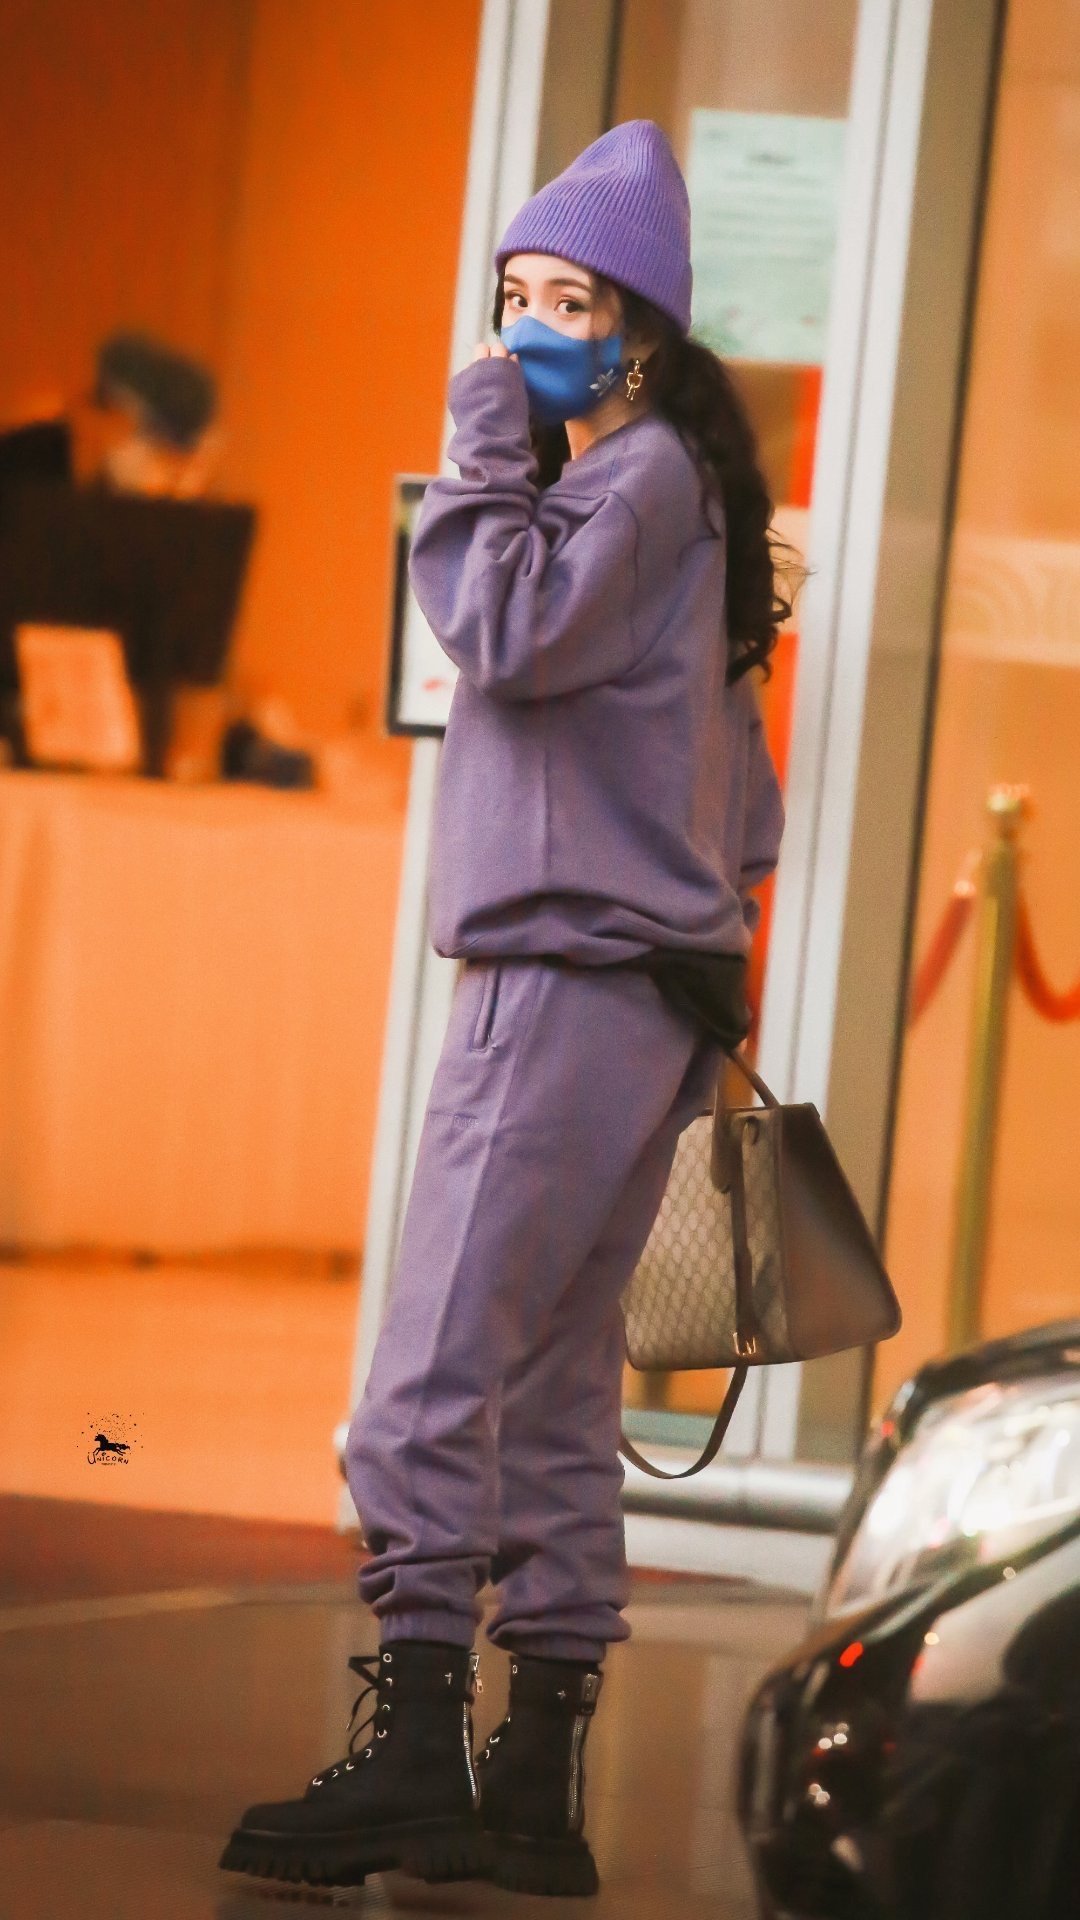 杨幂今日机场造型 穿紫色套装 大波浪卷发配上紫色帽子好可爱 娱乐 蛋蛋赞